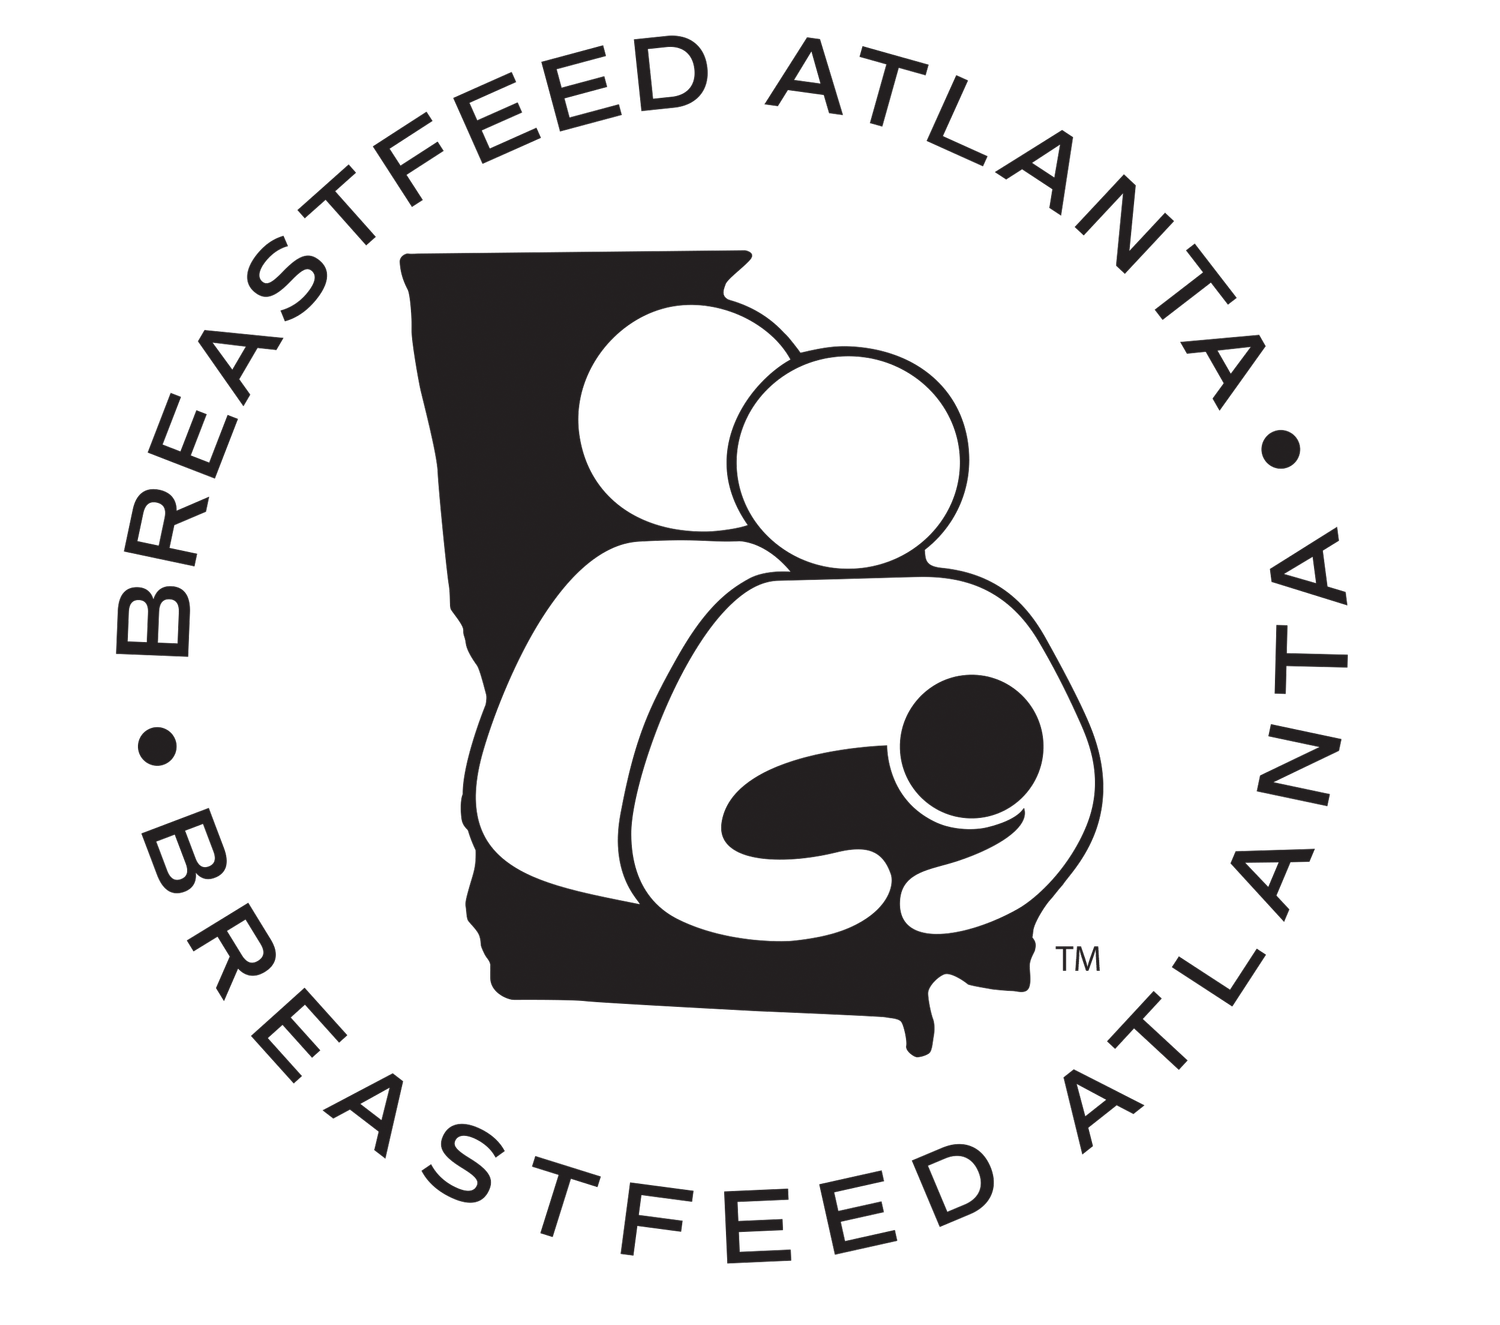 Breastfeed Atlanta Shop